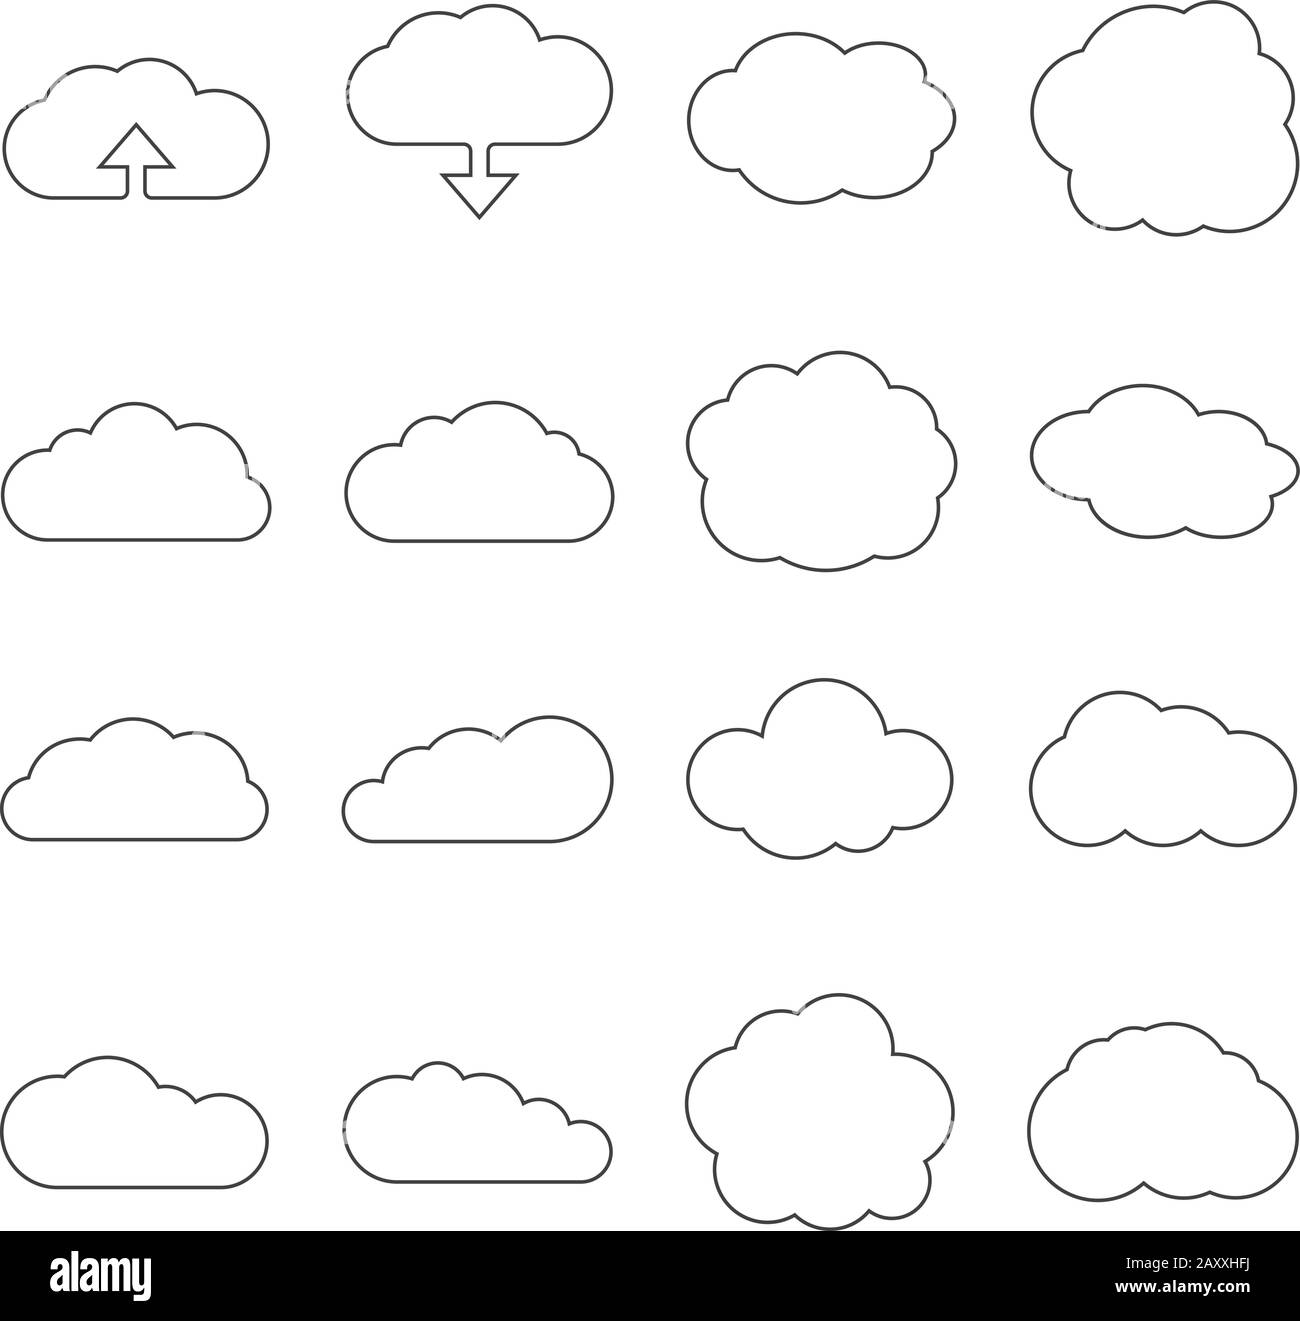 Icone Web della linea cloud. Set lineare a forma di cloud per il download o i segni del cloud computing Illustrazione Vettoriale